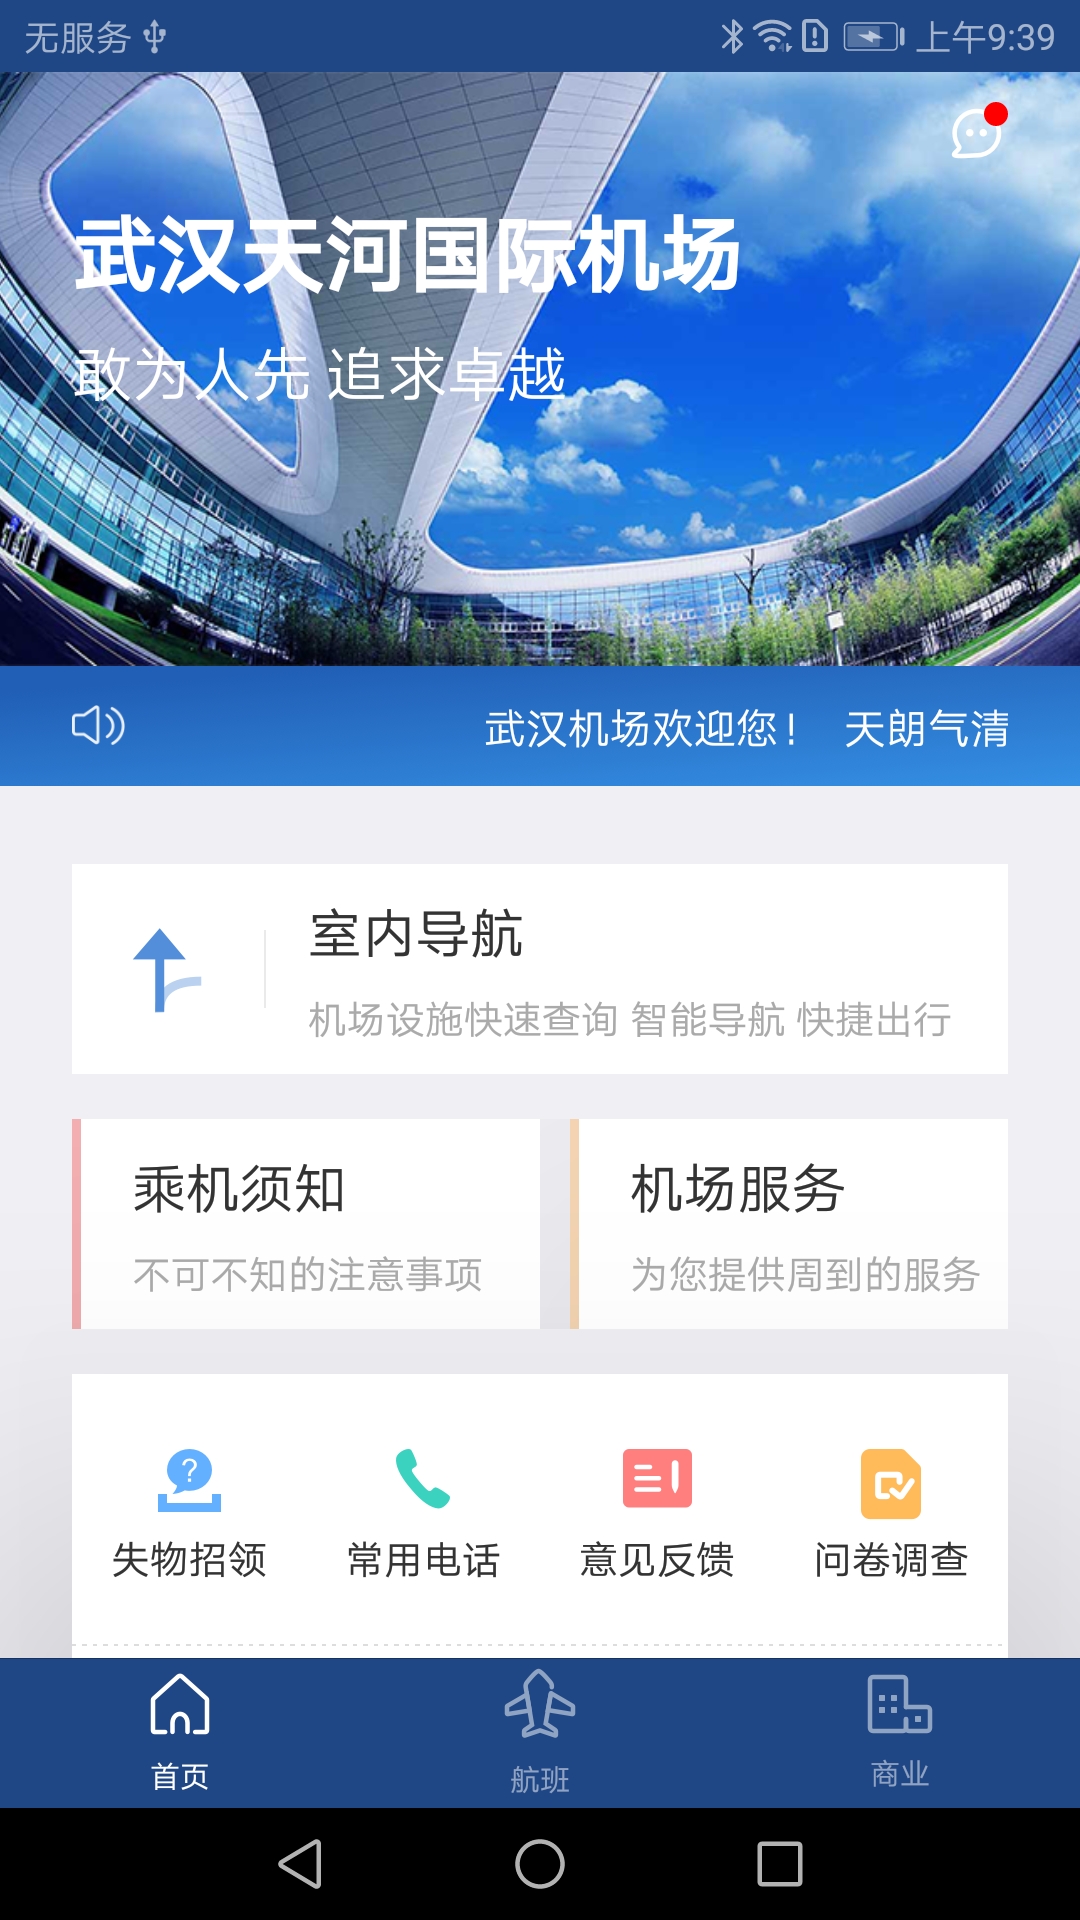 武汉机场航旅助手v1.0.0